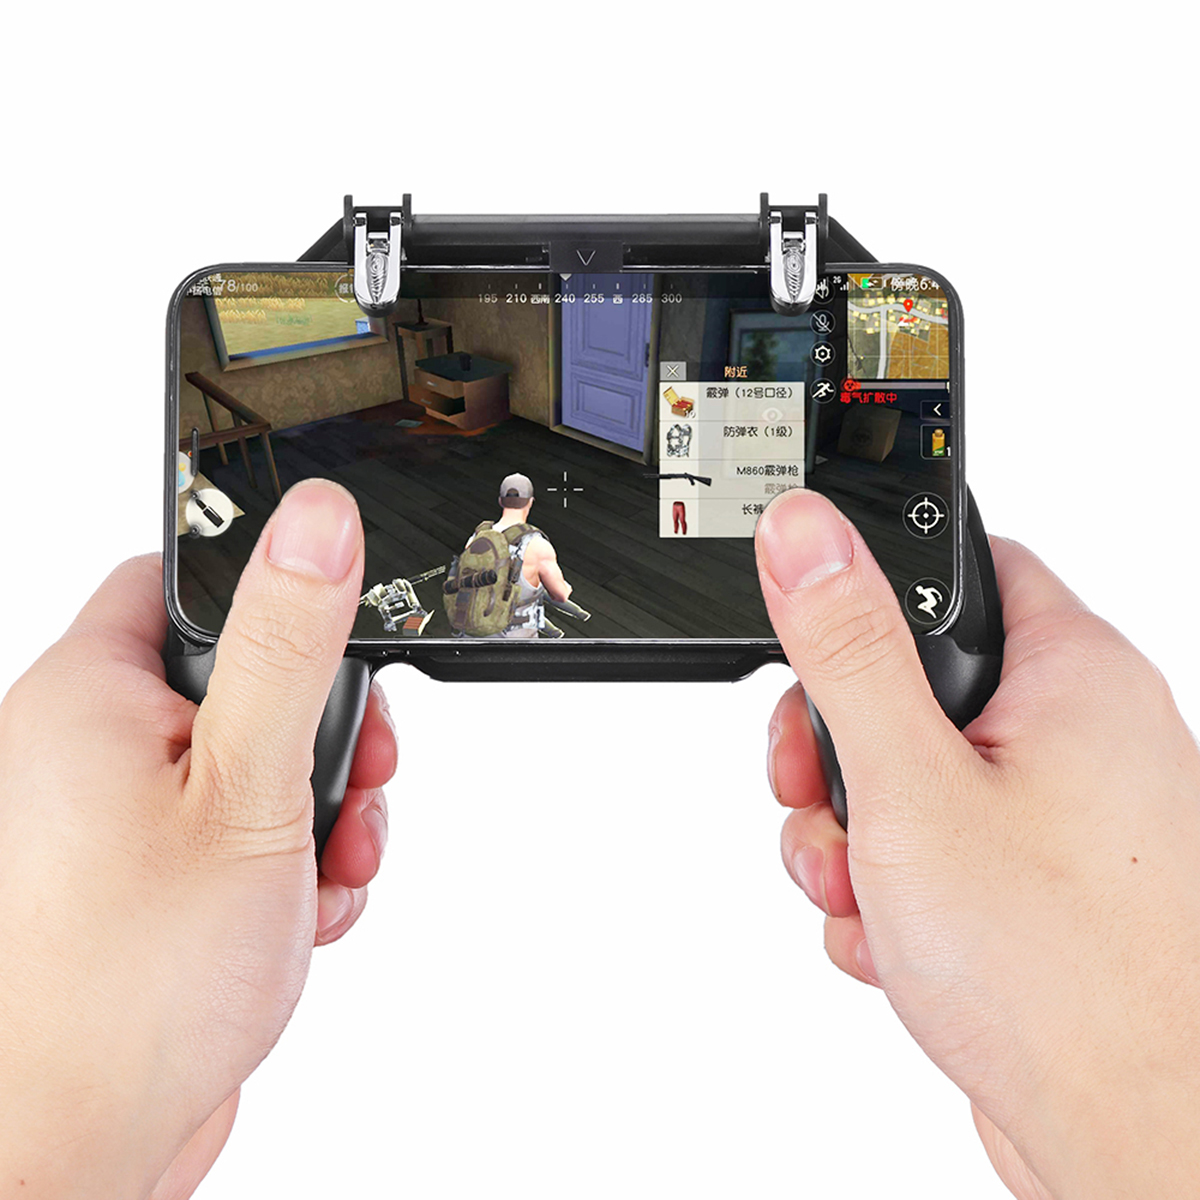 

Геймпад Джойстик Fire Trigger Shooter Кнопка Игровой контроллер для PUBG Мобильная игра для Смартфон